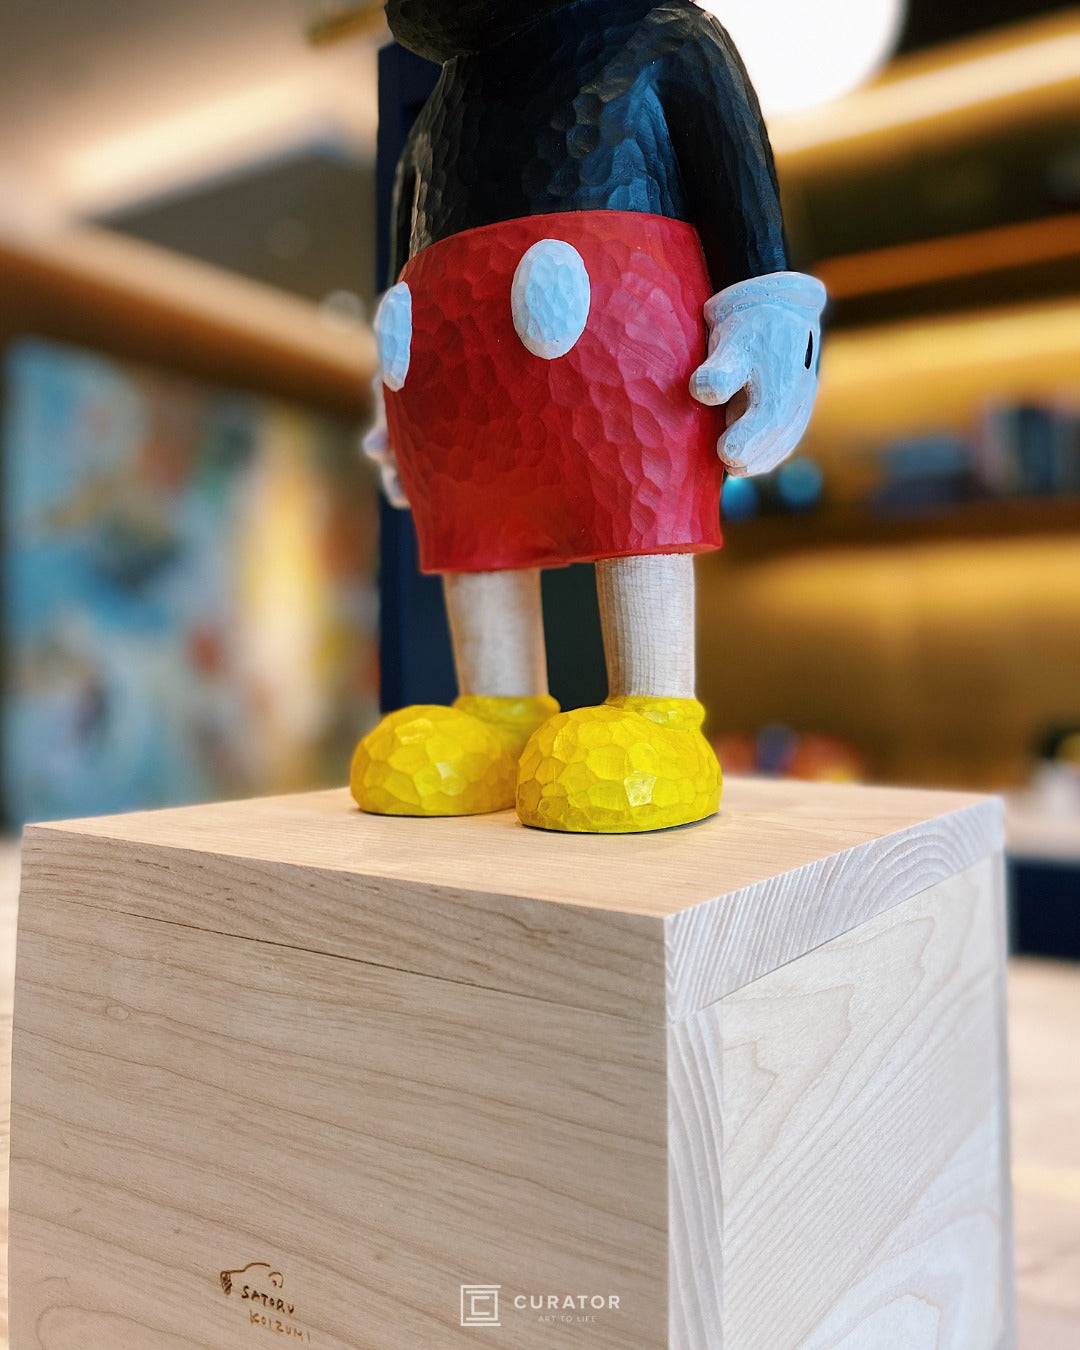 SATORU KOIZUMI - "WITH" Mickey Sculpture, 2020